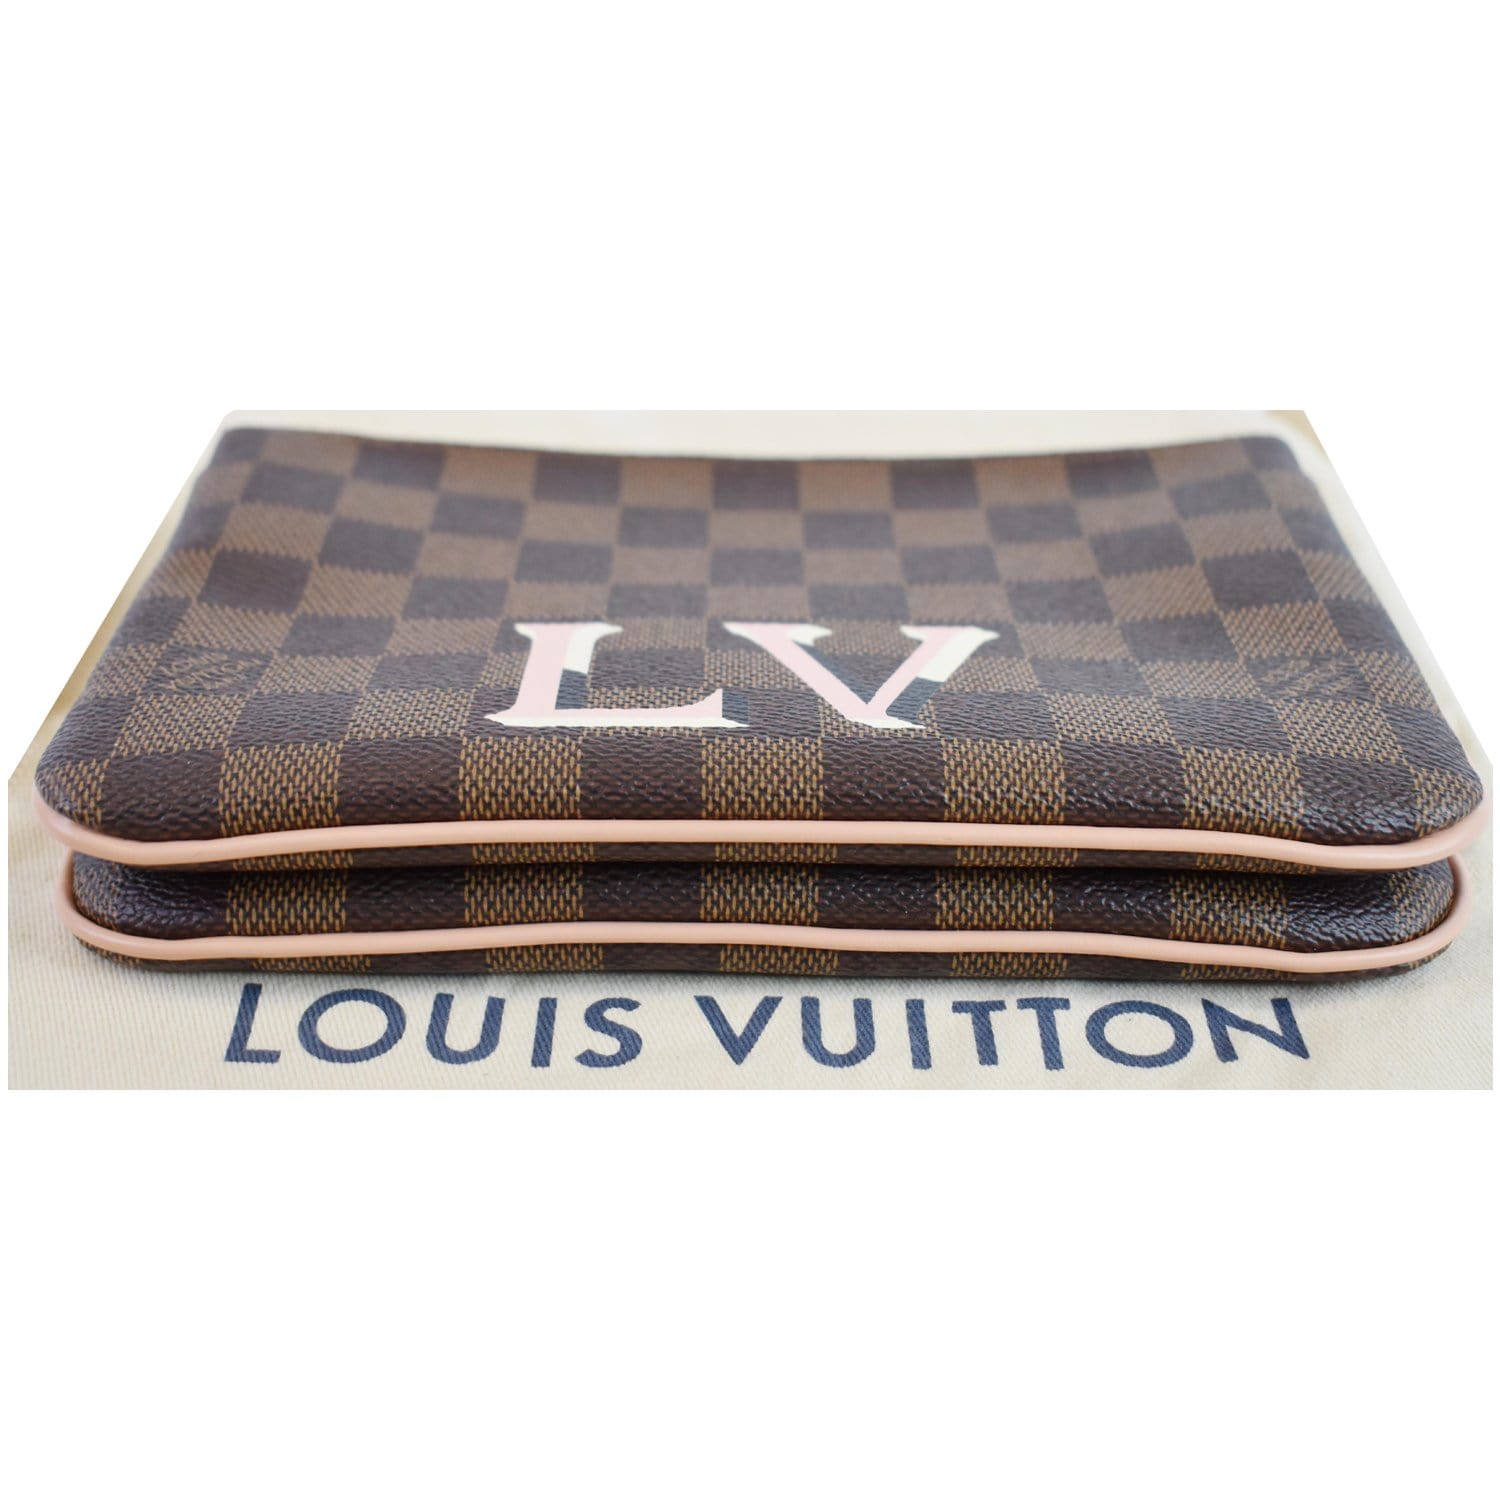 Double zip linen crossbody bag Louis Vuitton Brown in Linen - 21791254